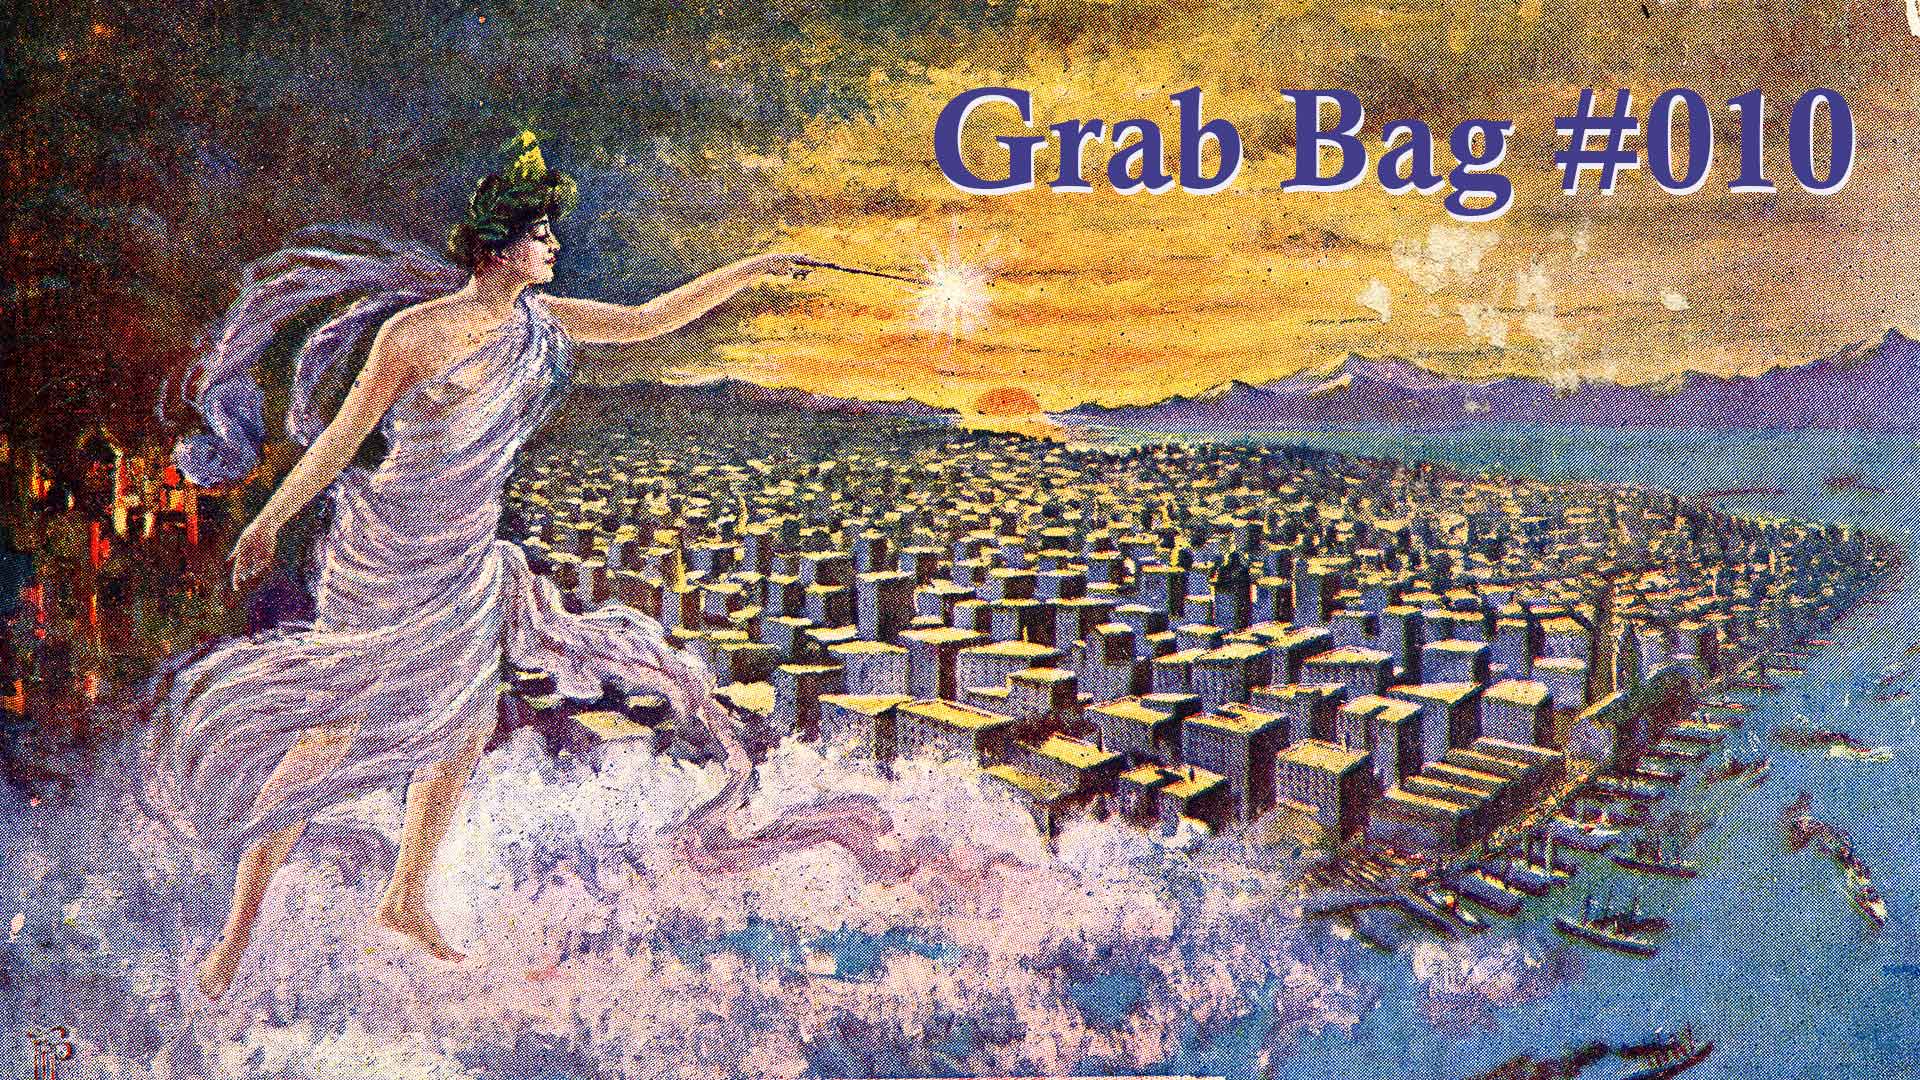 Grab Bag #010